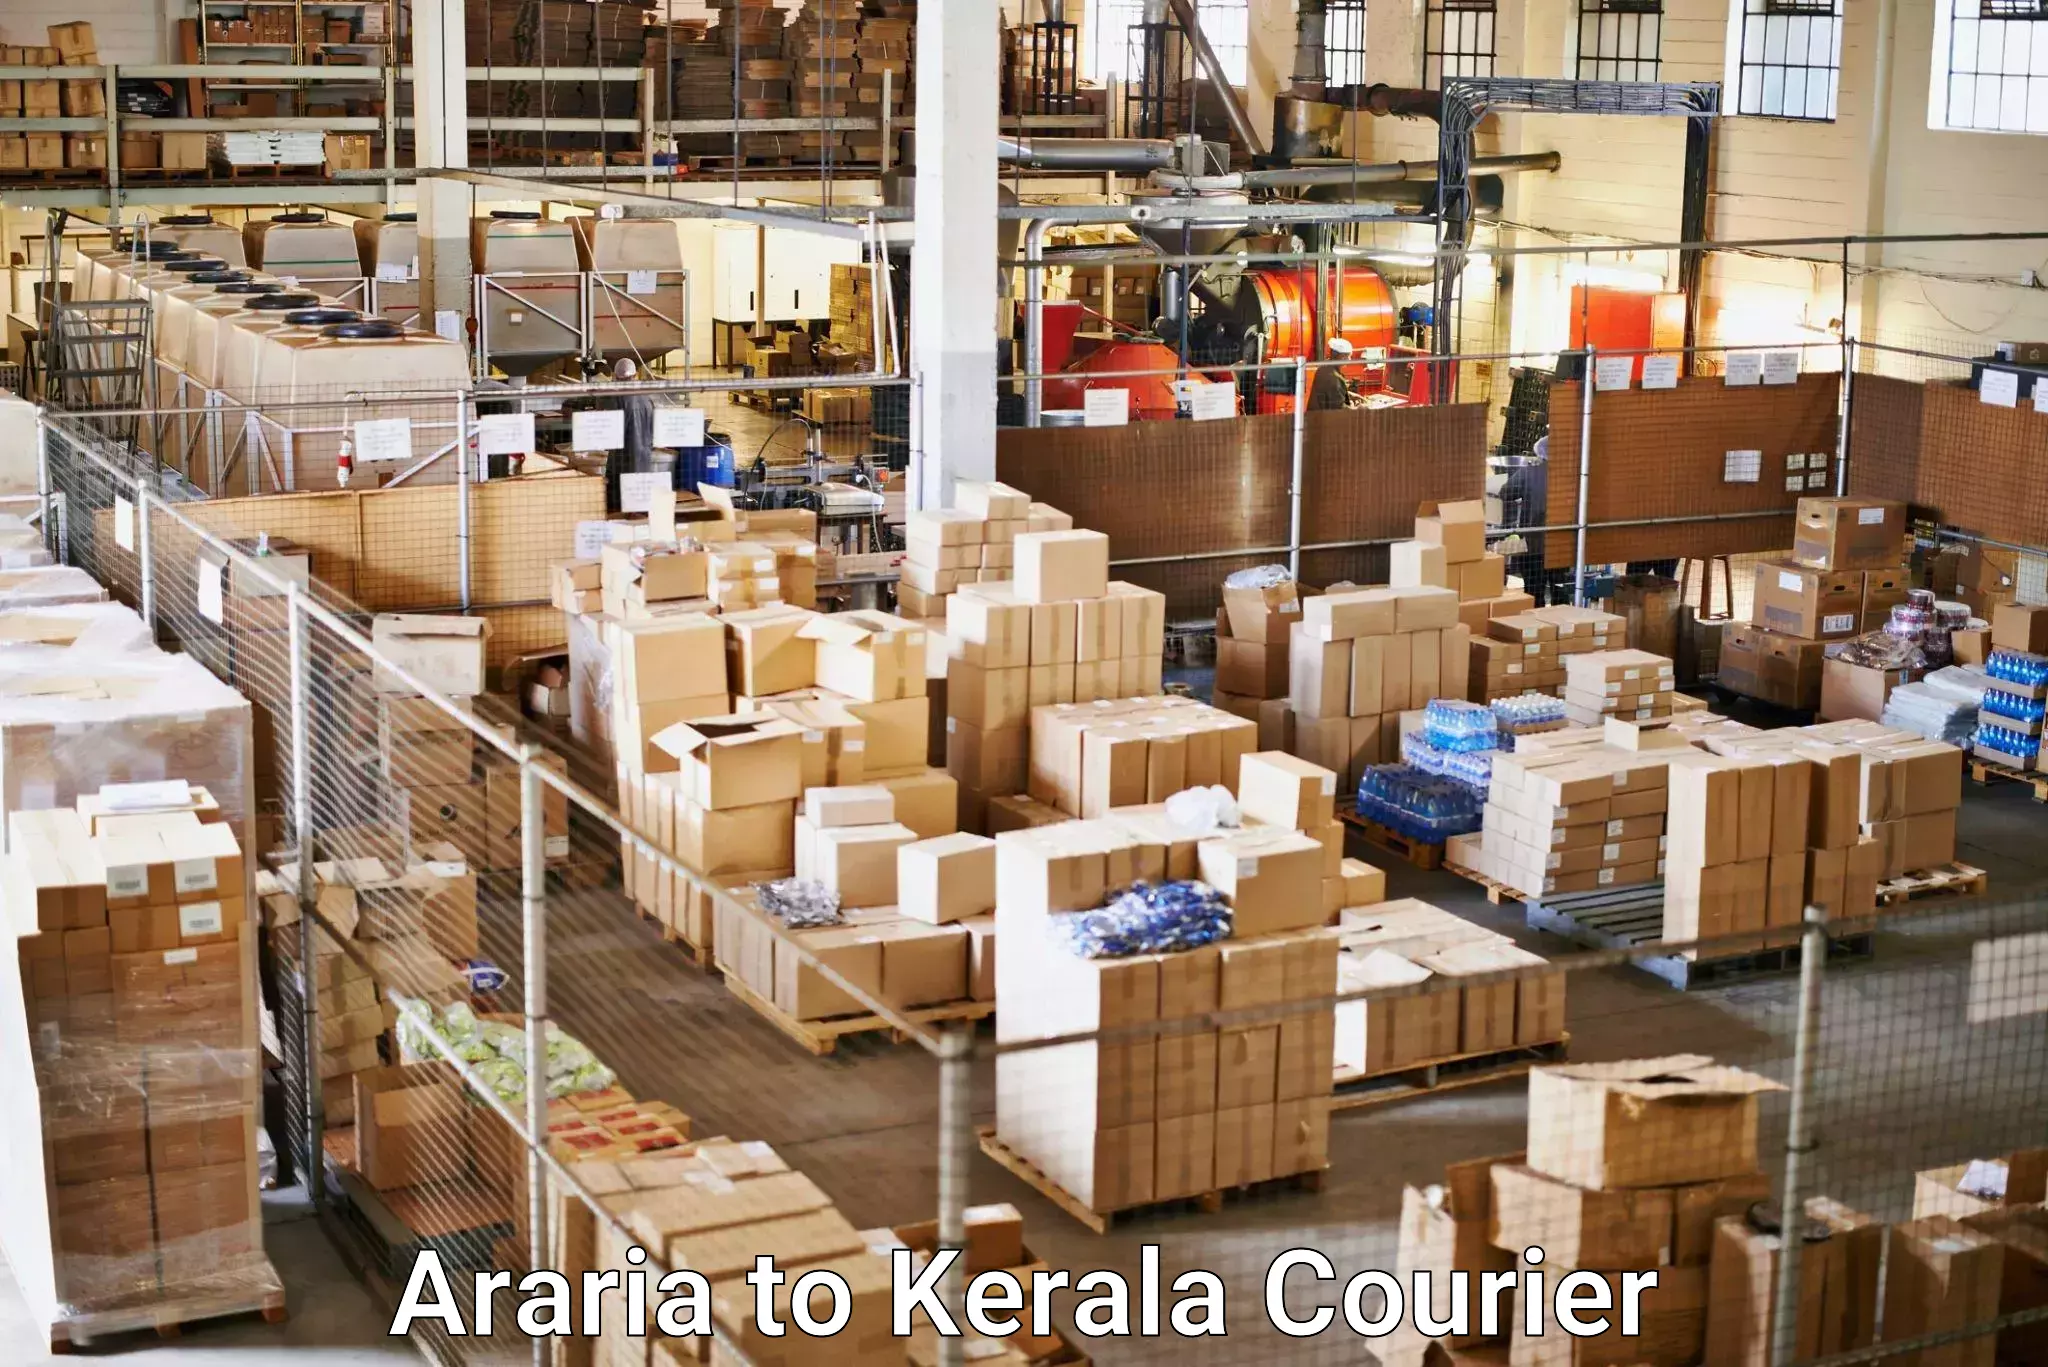 Bulk shipping discounts Araria to Thrissur